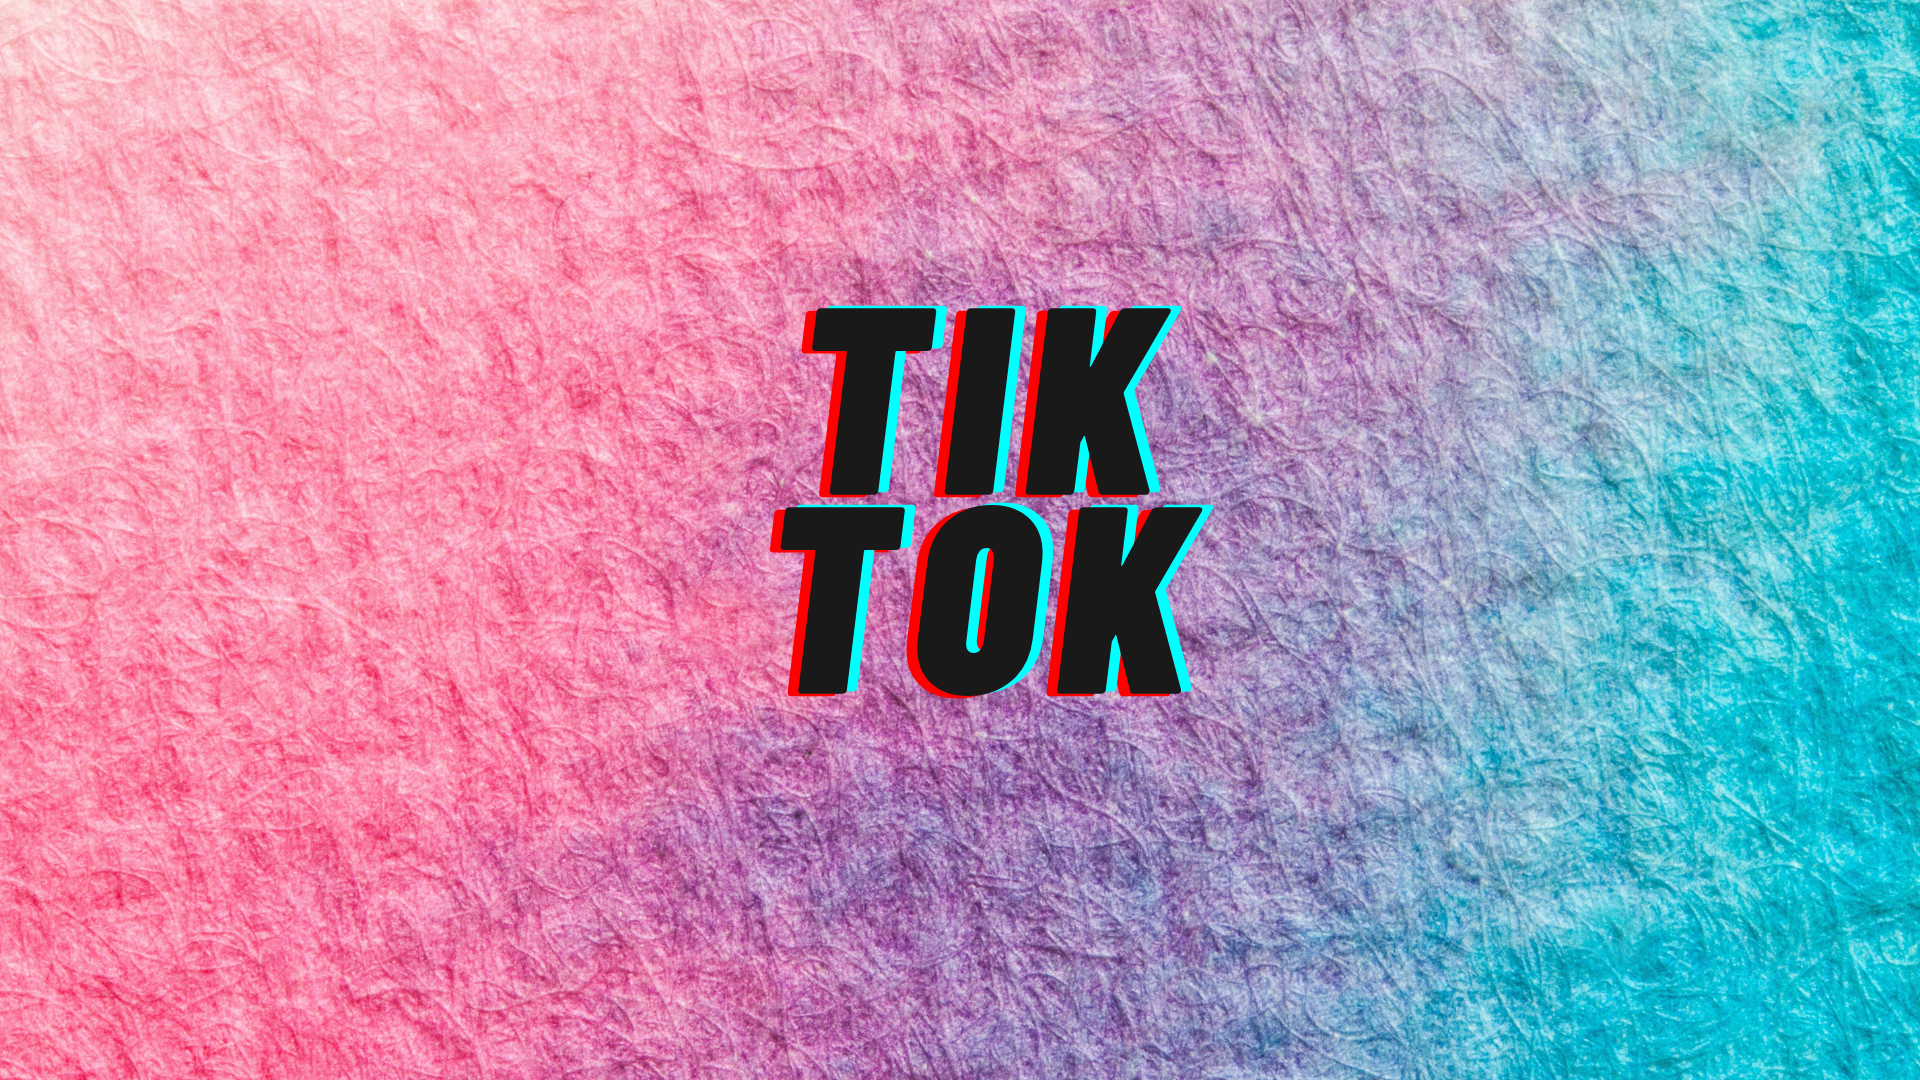 Hình nền TikTok: Bạn là fan của Tik Tok và muốn đem phong cách thanh lịch, trẻ trung của ứng dụng này vào hình nền của mình? Sử dụng hình nền Tik Tok là cách tuyệt vời nhất để tôn lên phong cách của bạn. Hãy tìm kiếm những hình nền đẹp và độc đáo ngay bây giờ!